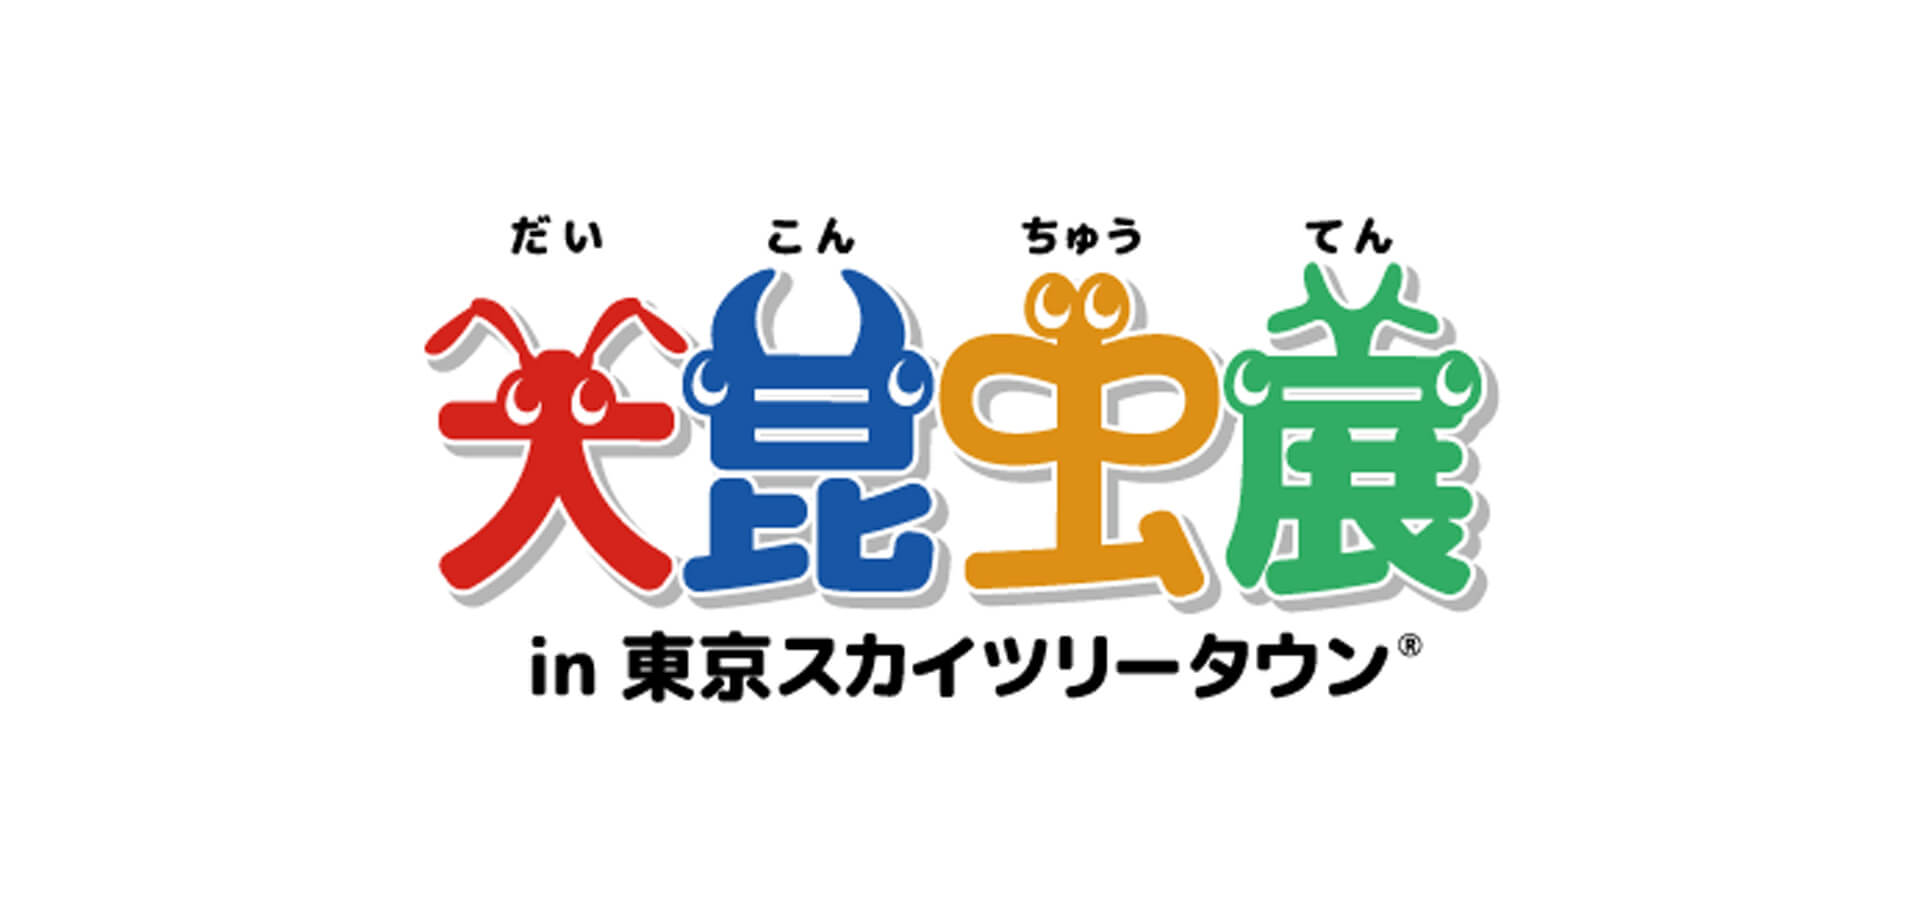 大昆虫展in 東京スカイツリータウンⓇ ロゴ